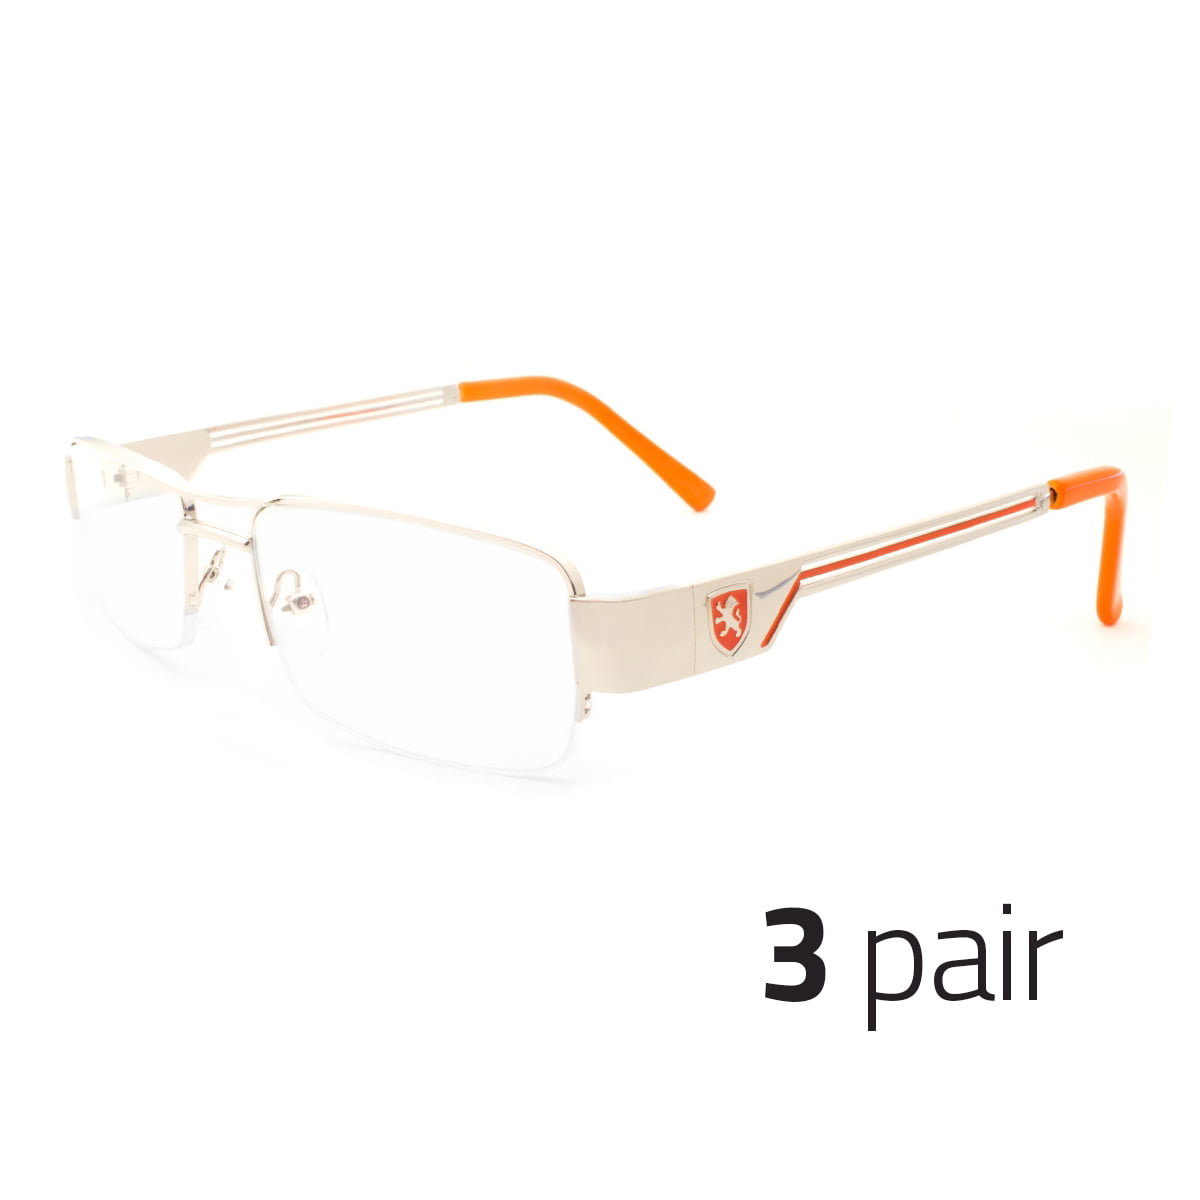 2 PAIR Fashion Unisex men Women Clear Lens Nerd Geek Glasses Eyewear Orange SB 